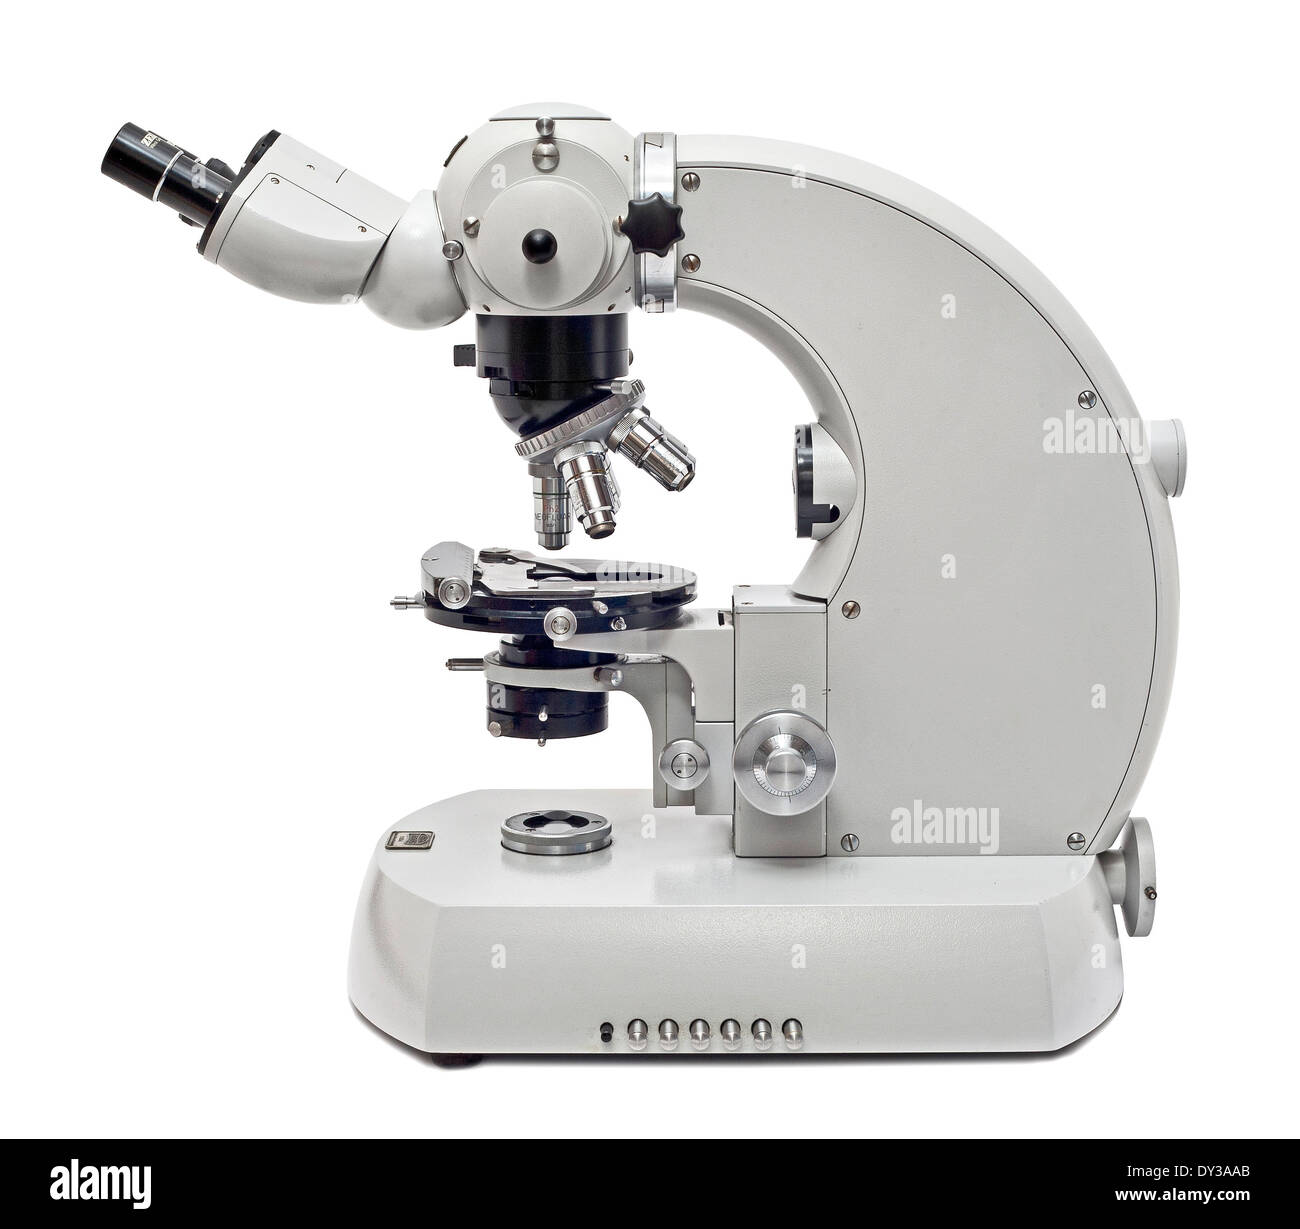 Universal Zeiss Microscopio compuesto, utilizado ampliamente en la década de los años ochenta en muchos laboratorios profesionales en todo el mundo. Foto de stock